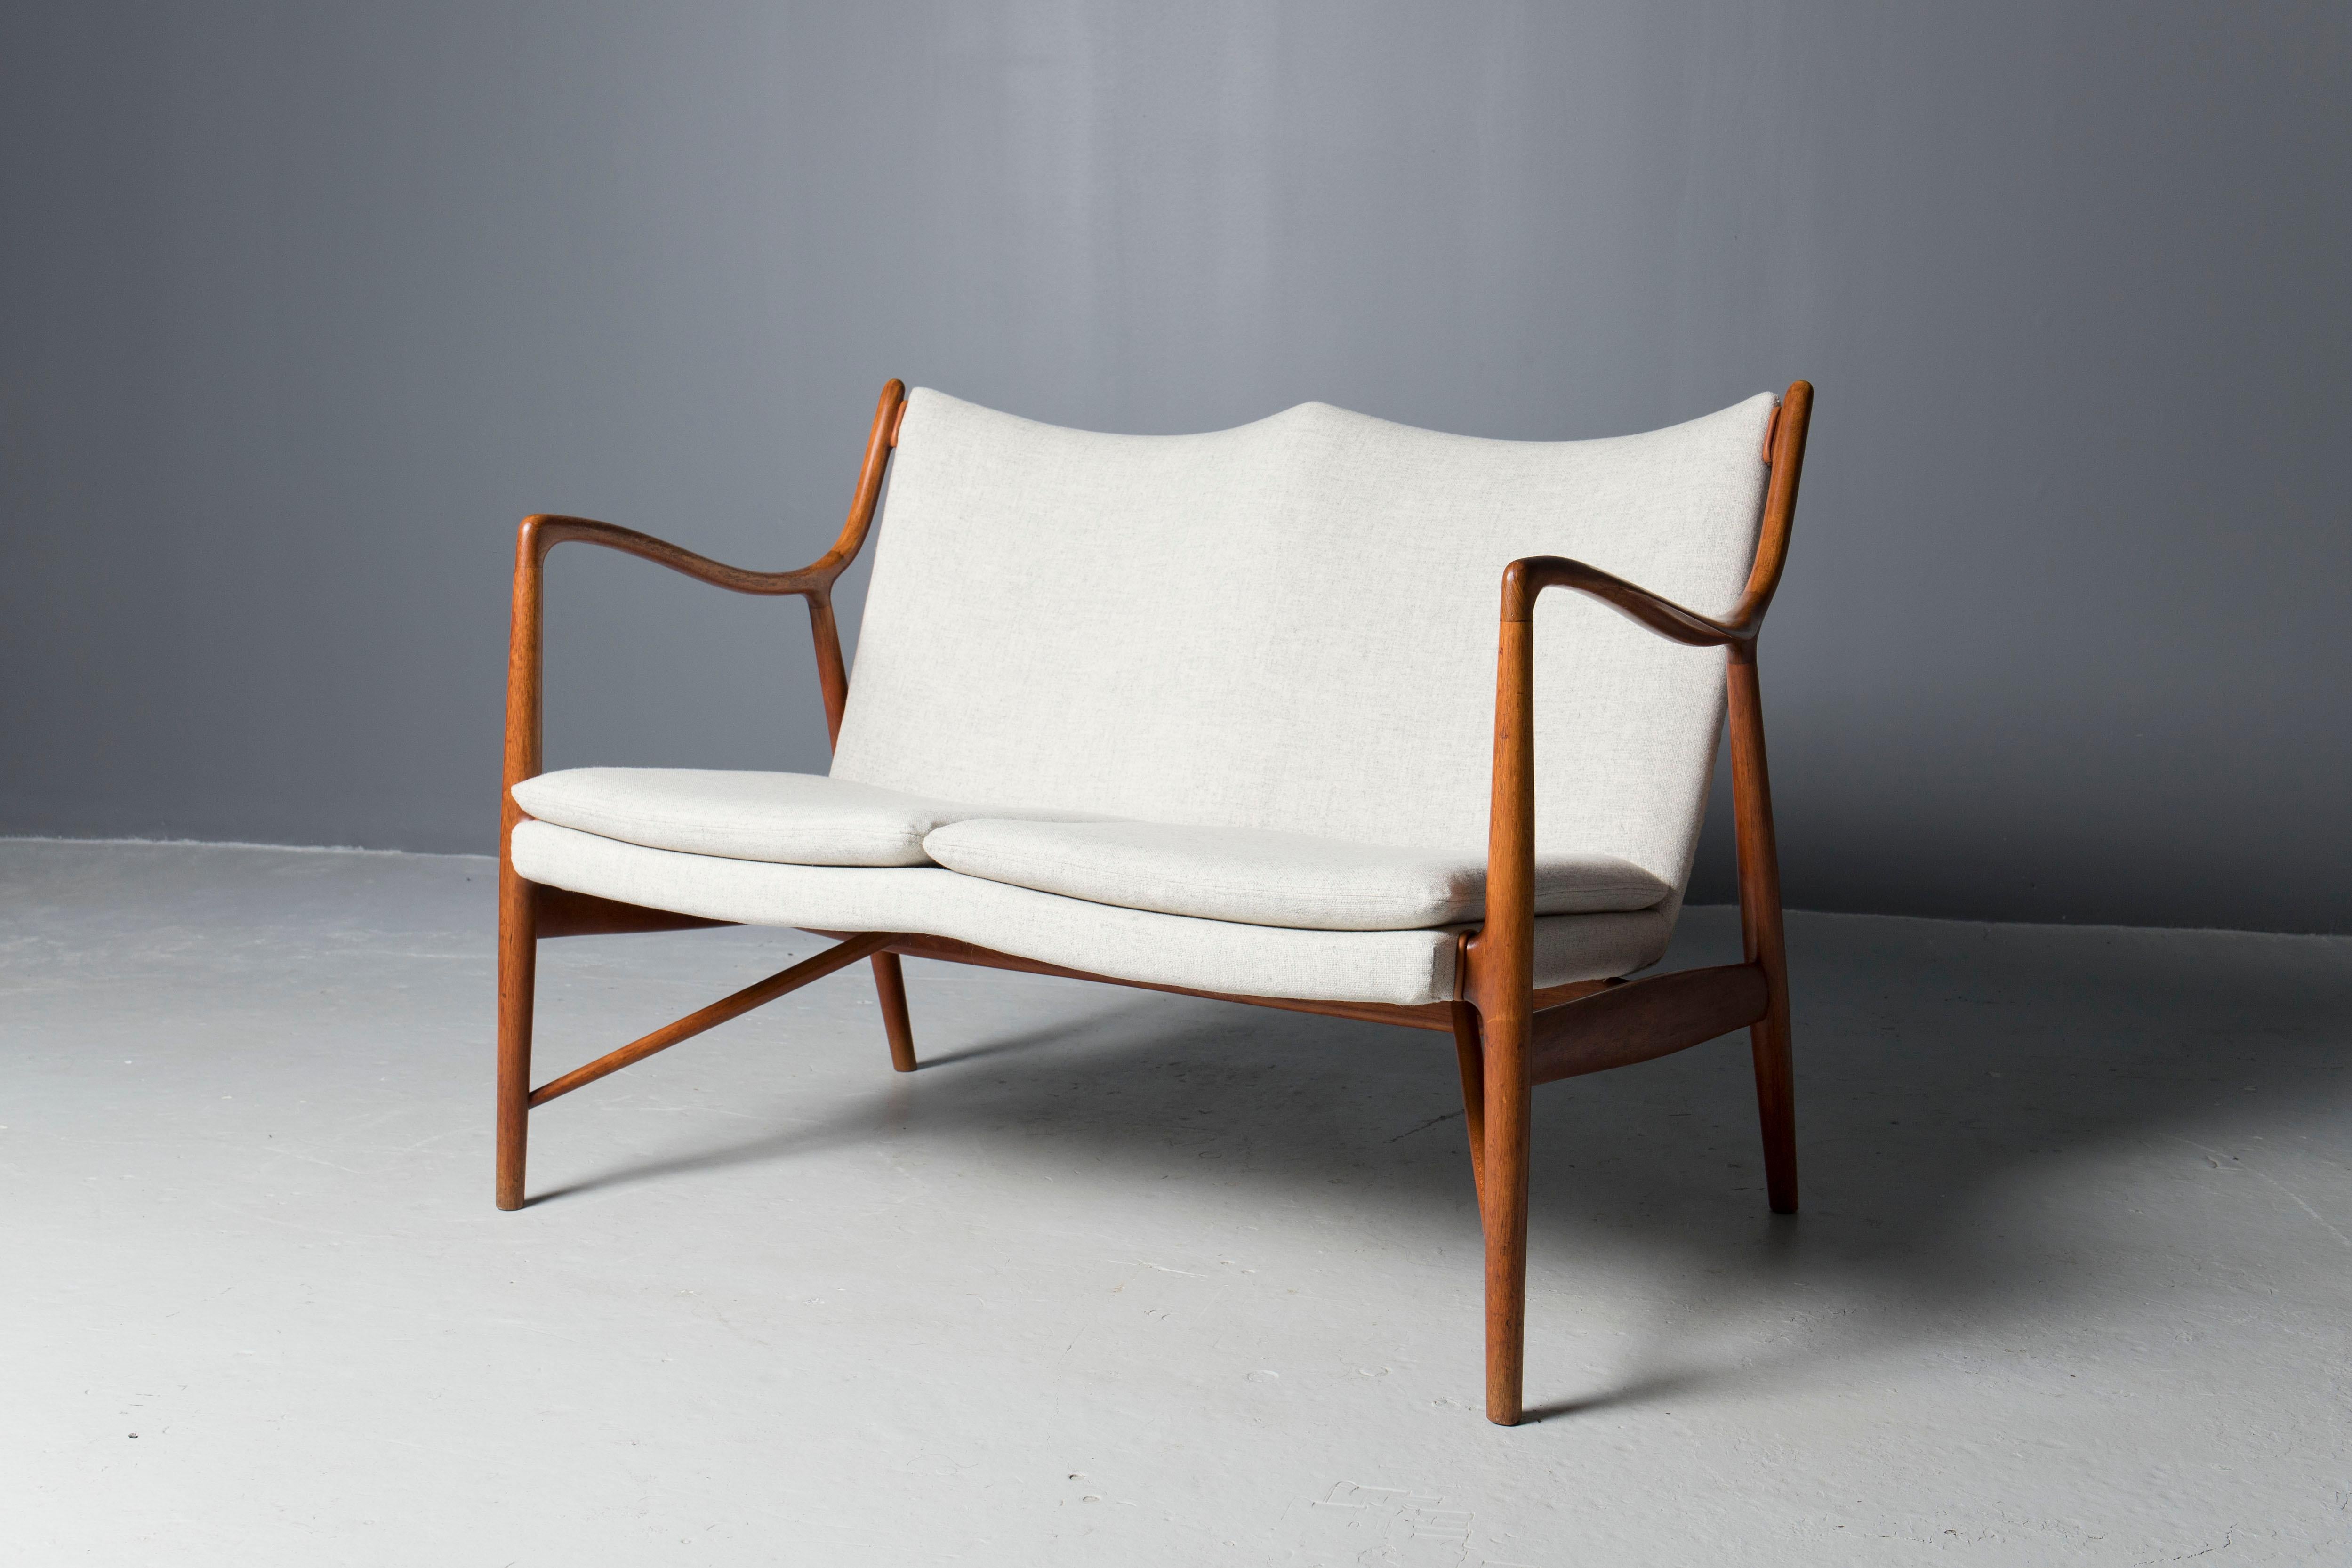 Rare et ancien modèle de canapé 45, conçu par l'architecte danois Finn Juhl et exécuté par Niels Vodder au début des années 1950.
Le cadre sculptural en teck a été nettoyé et huilé par des professionnels, la tapisserie a été mise à jour avec de la